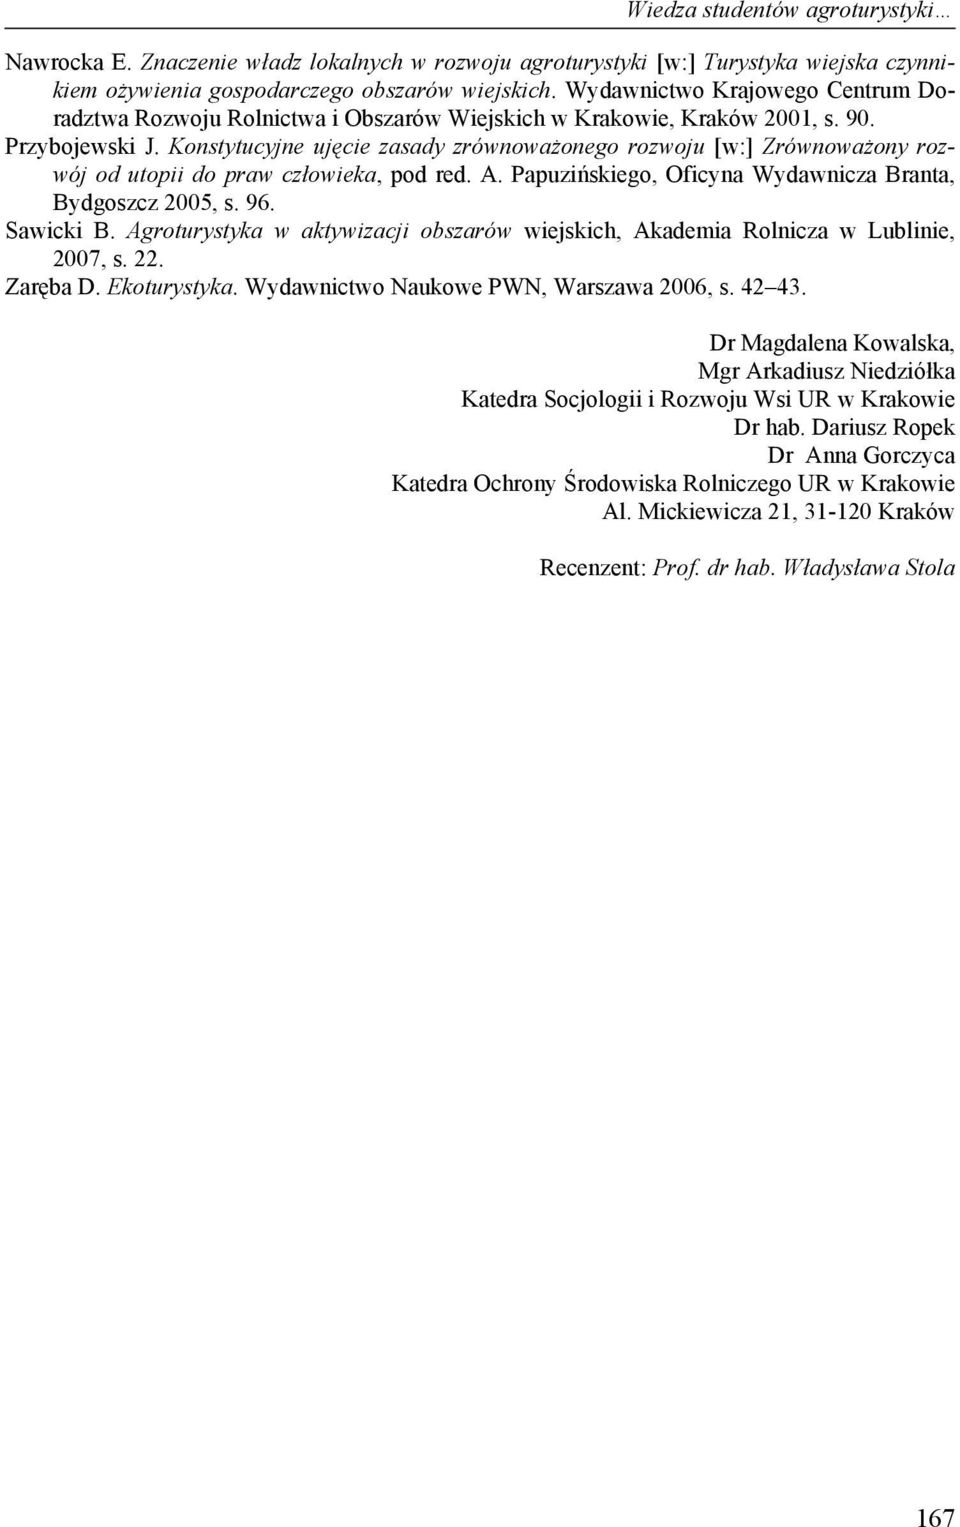 Konstytucyjne ujęcie zasady zrównoważonego rozwoju [w:] Zrównoważony rozwój od utopii do praw człowieka, pod red. A. Papuzińskiego, Oficyna Wydawnicza Branta, Bydgoszcz 2005, s. 96. Sawicki B.